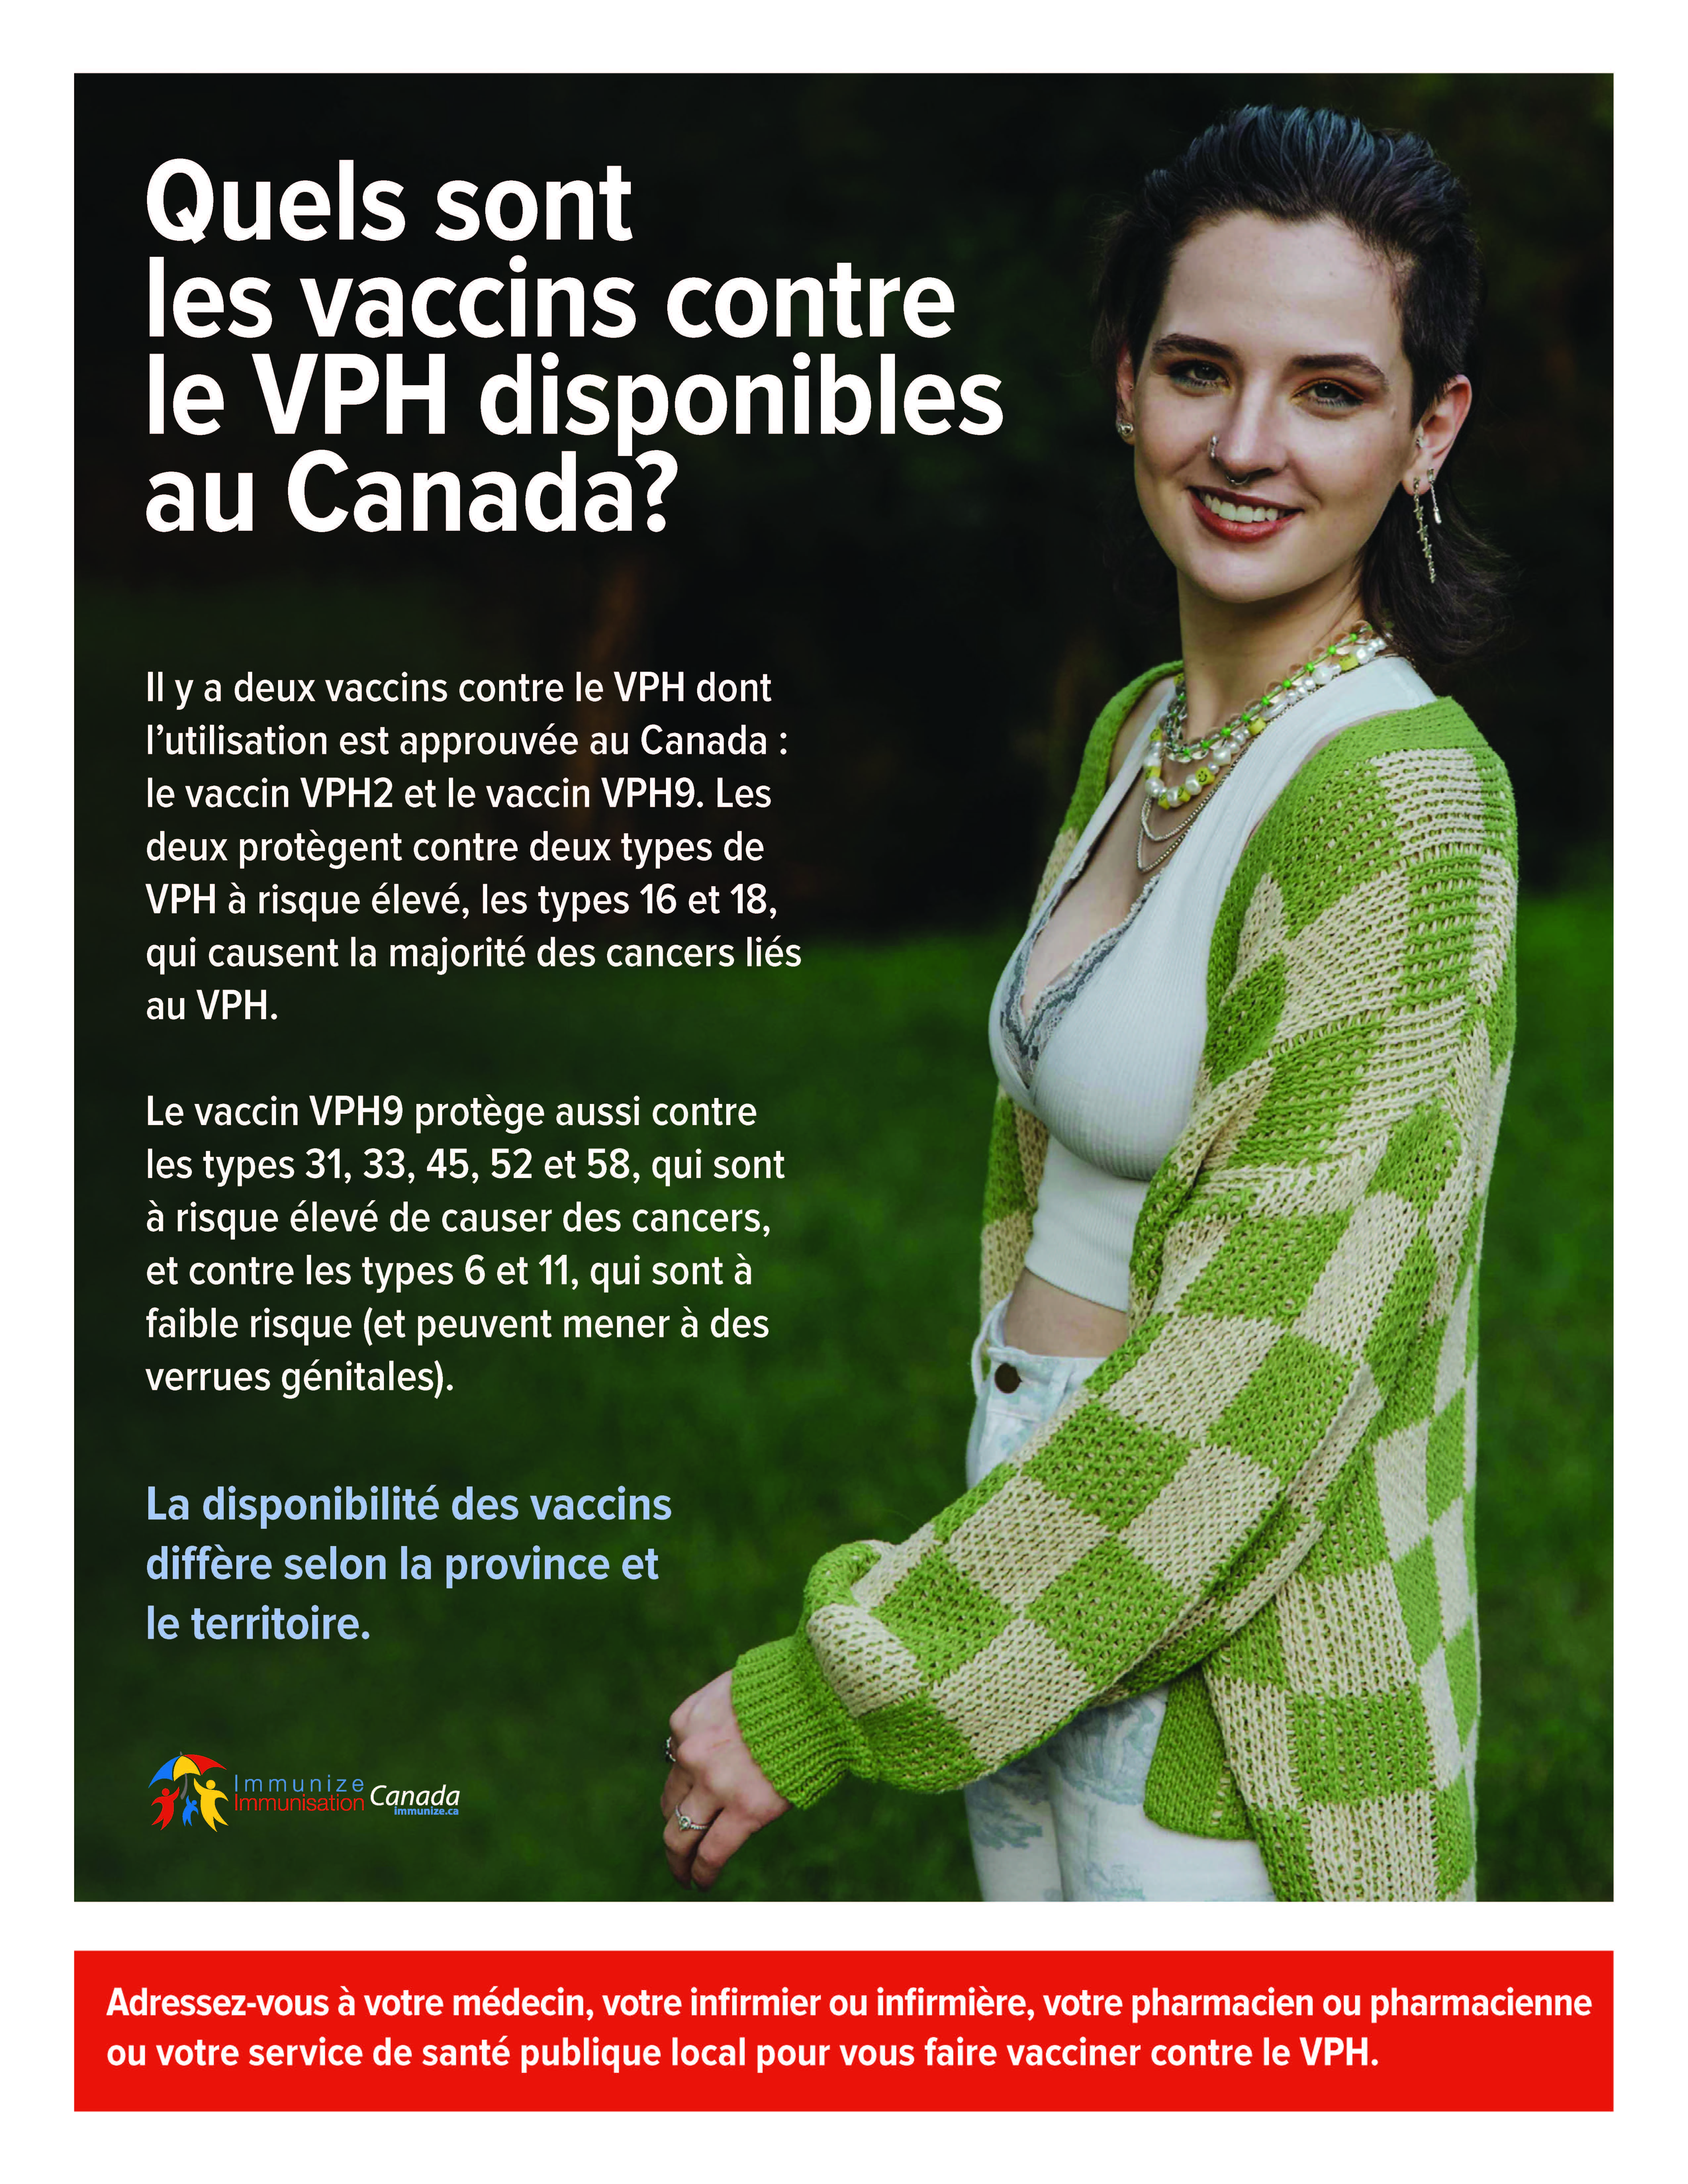 Quels sont les vaccins contre le VPH disponibles au Canada? (affiche)